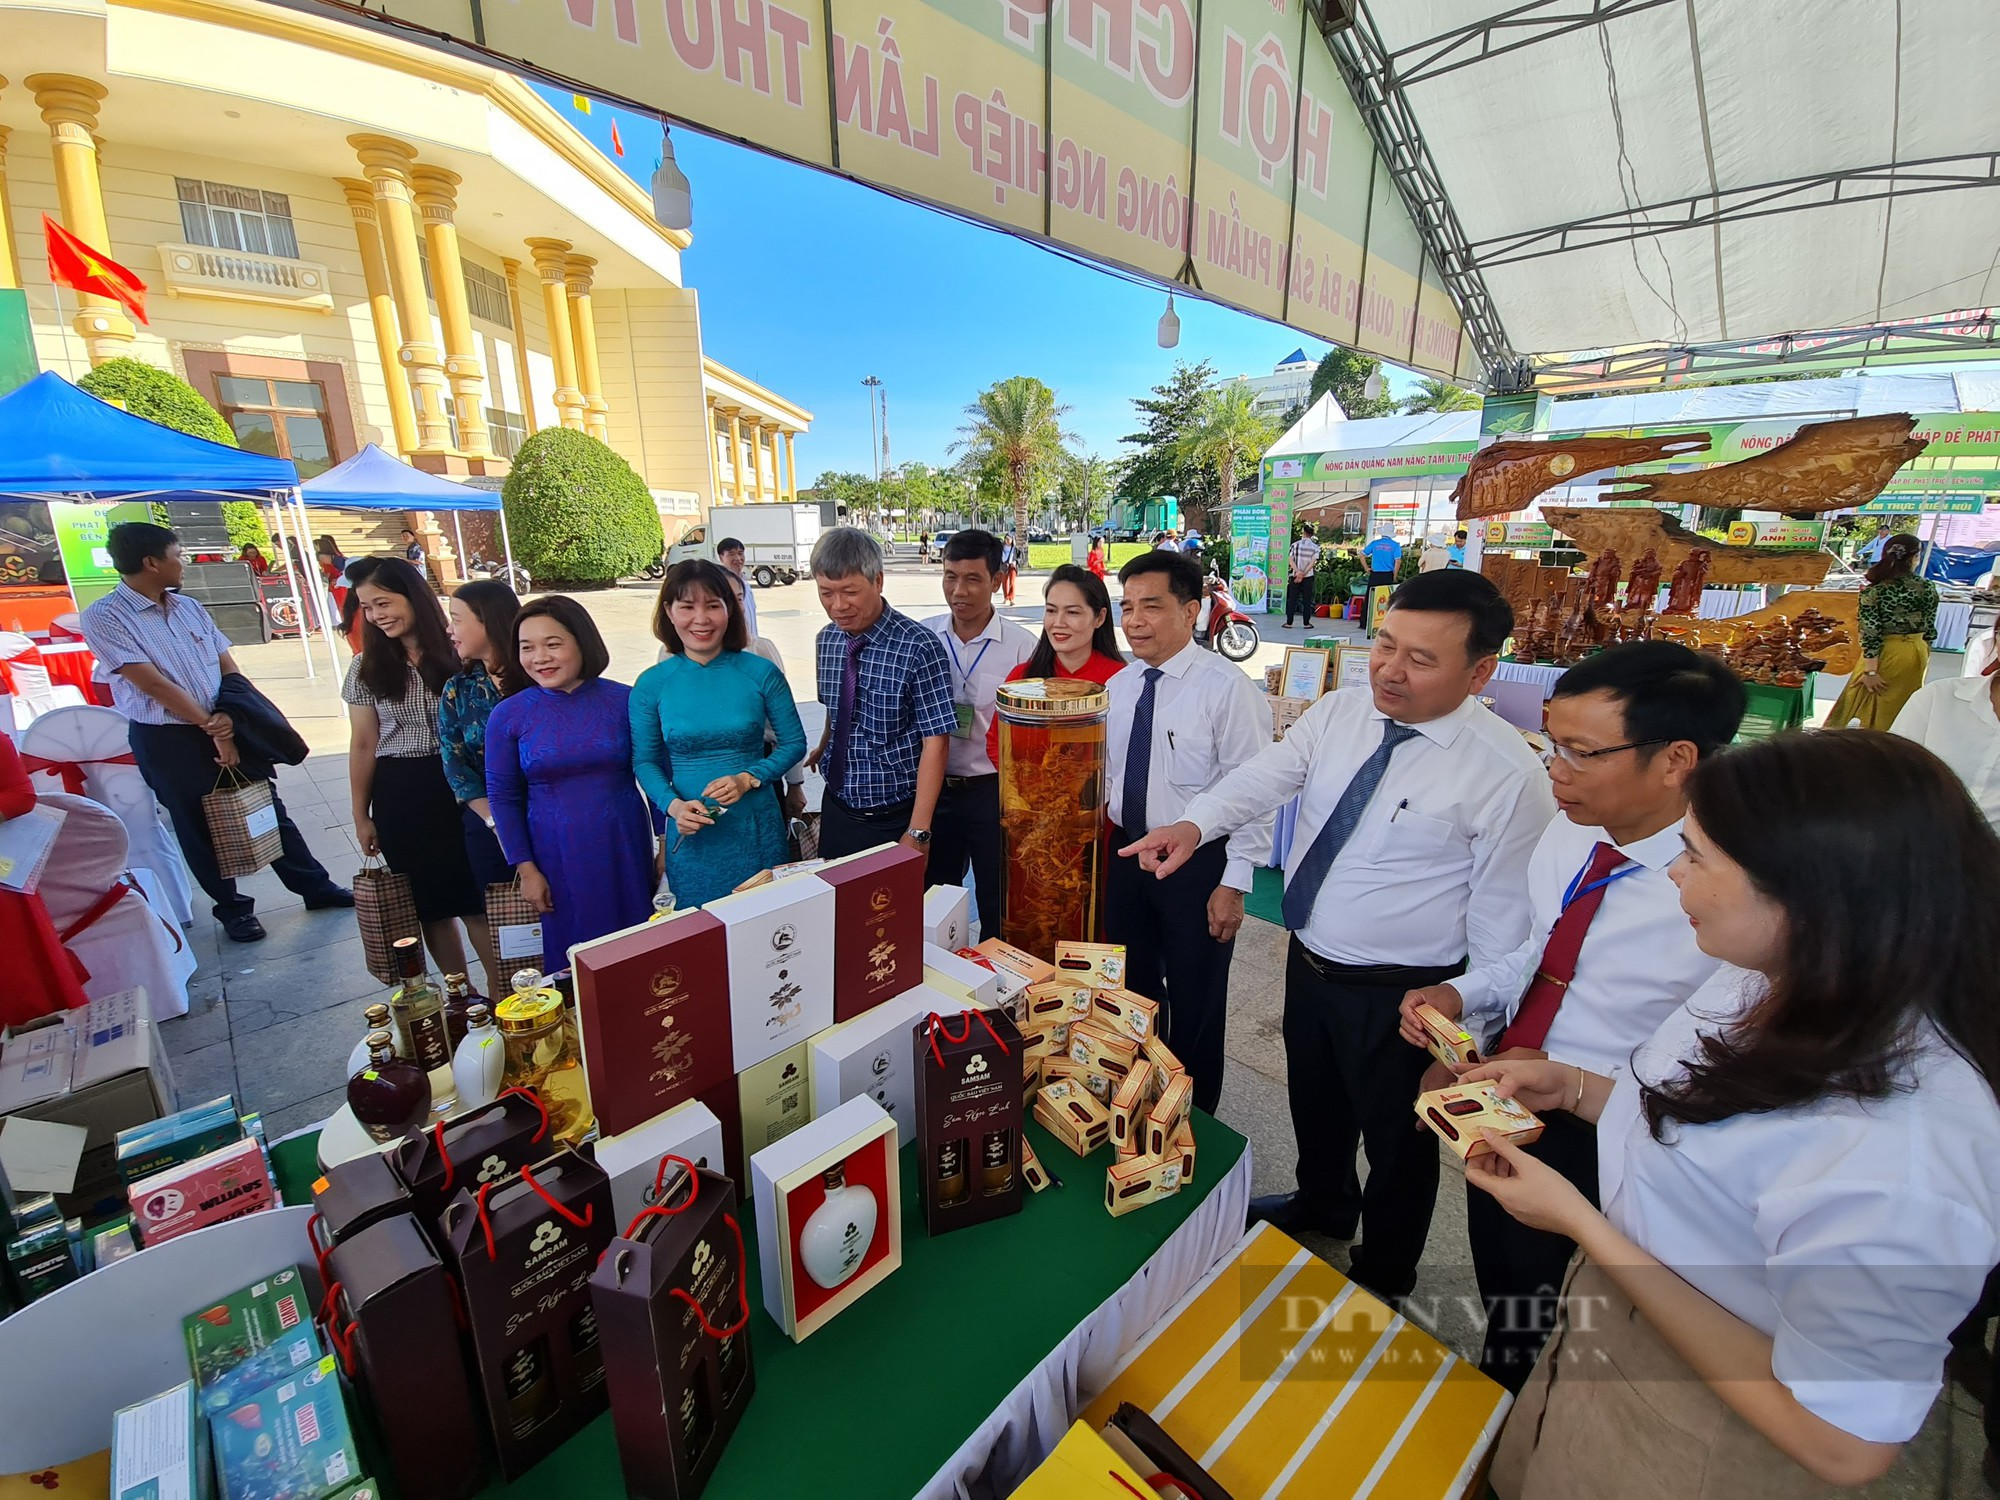 Hội Nông dân Quảng Nam khai mạc hội chợ nông nghiệp với 550 sản phẩm nhà nông các loại - Ảnh 2.